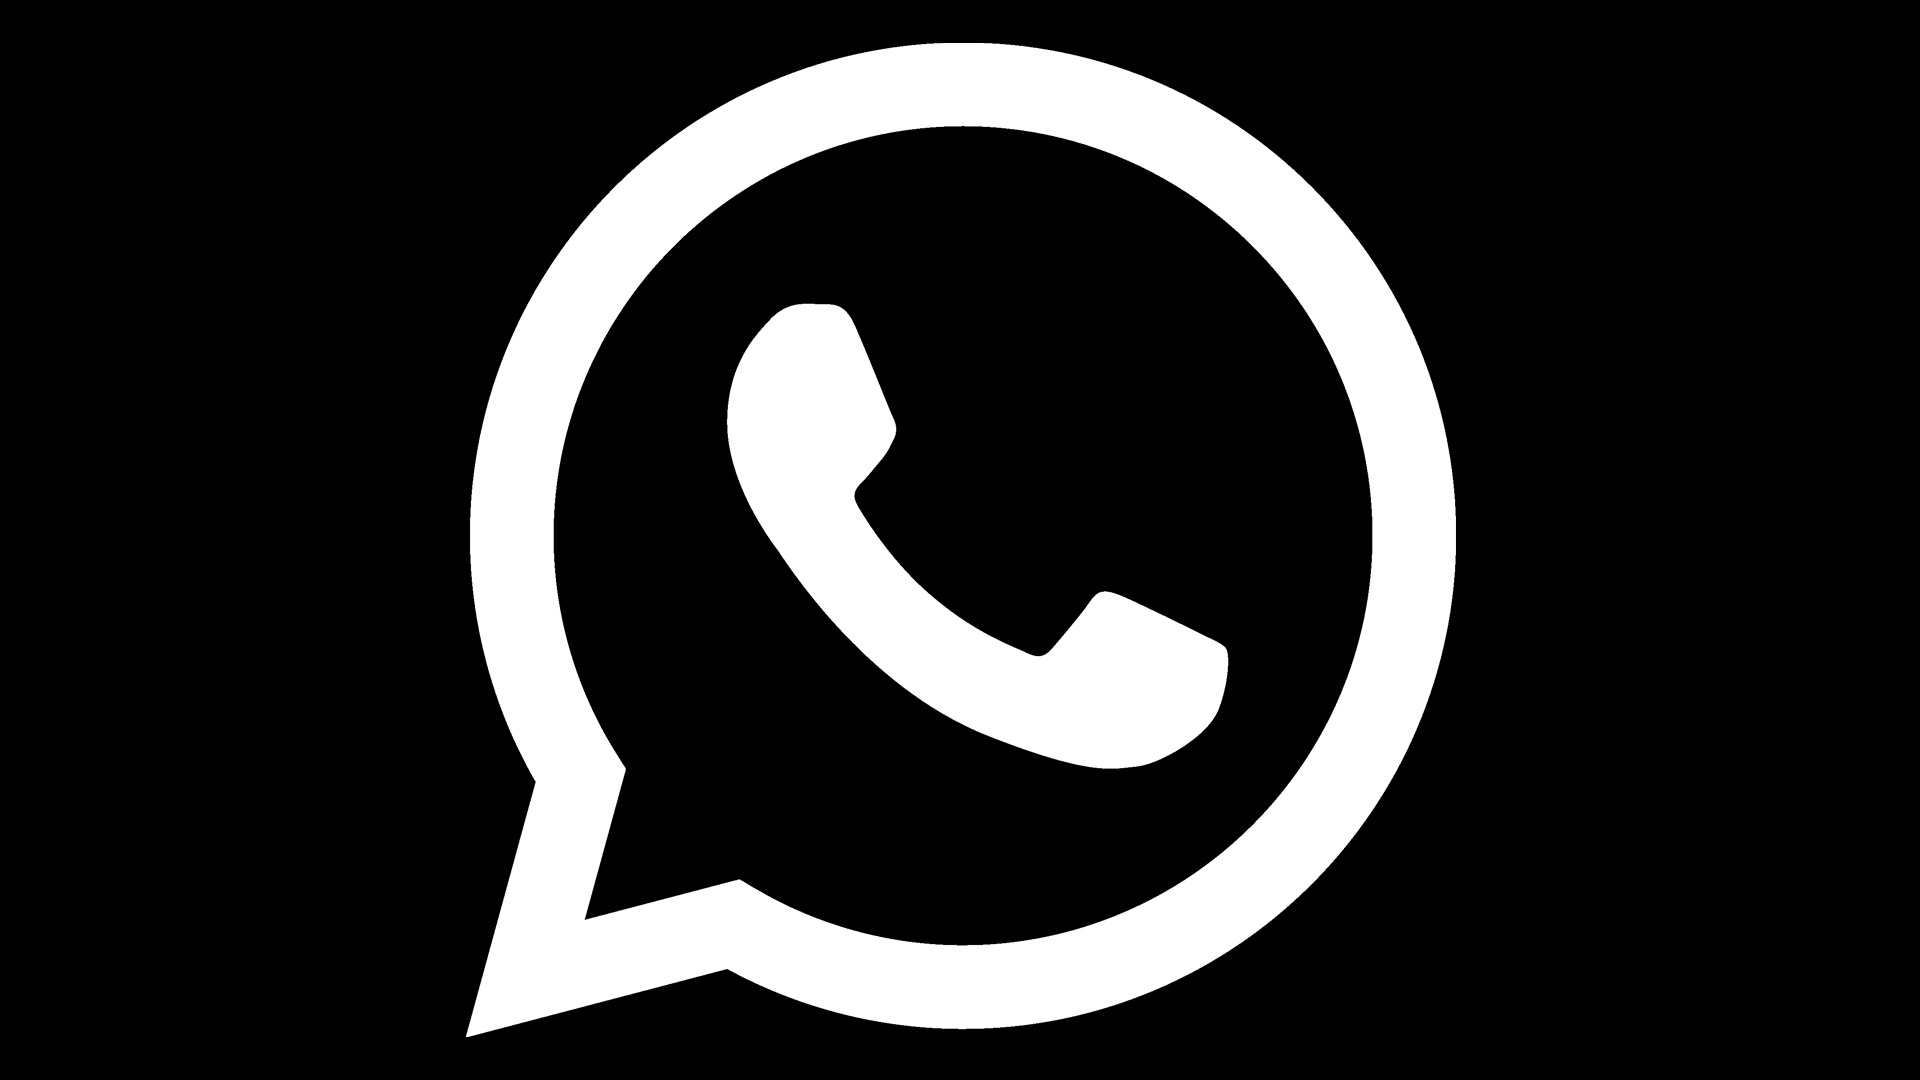 WhatsApp dostaje funkcj sprawiajc, e aplikacja staje si wicej ni tylko komunikatorem